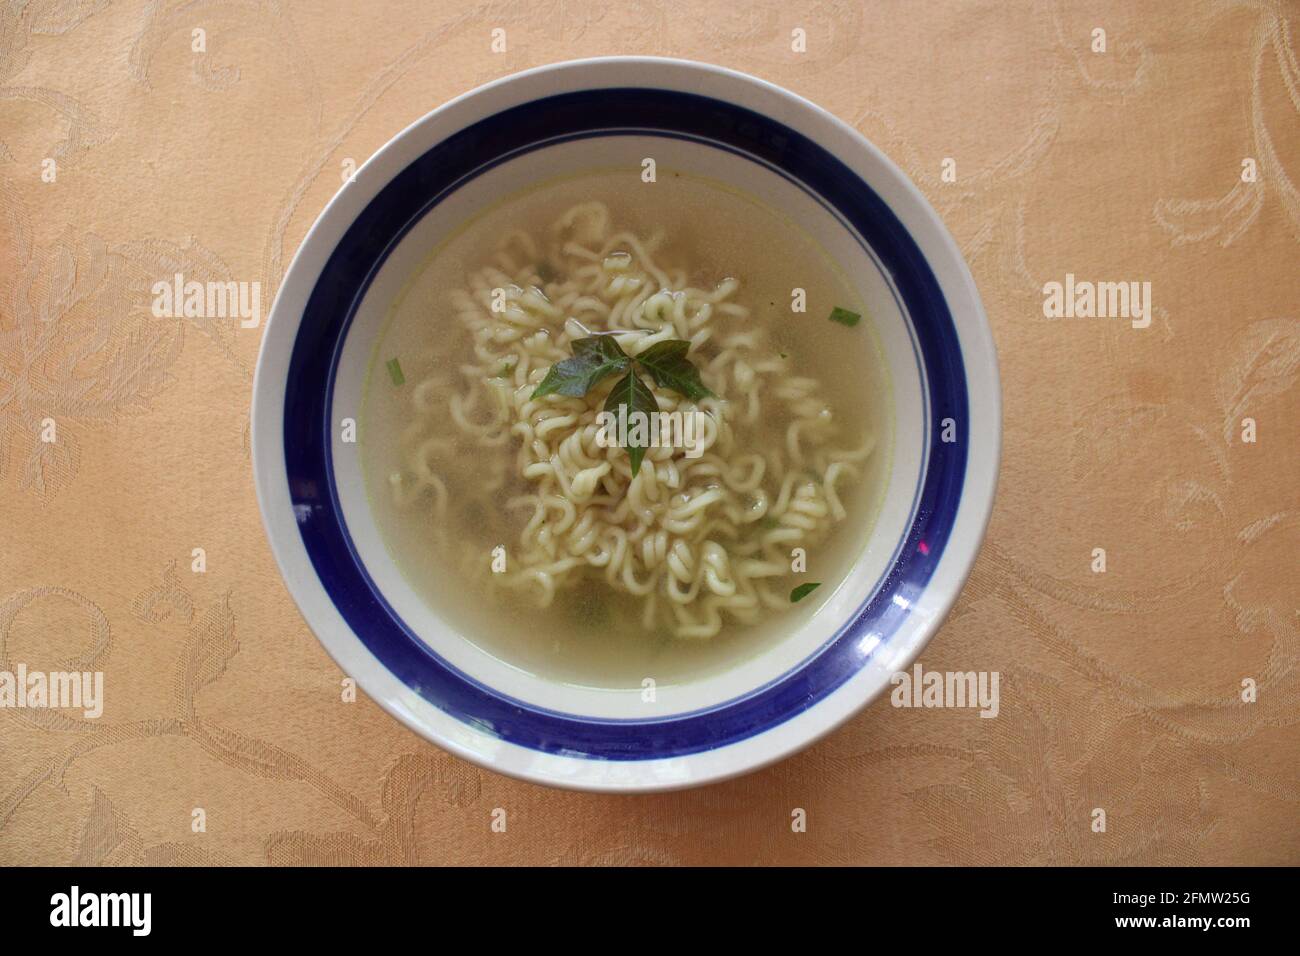 Ein Giftblatt, das eine Schüssel mit Suppe garniert Stockfoto